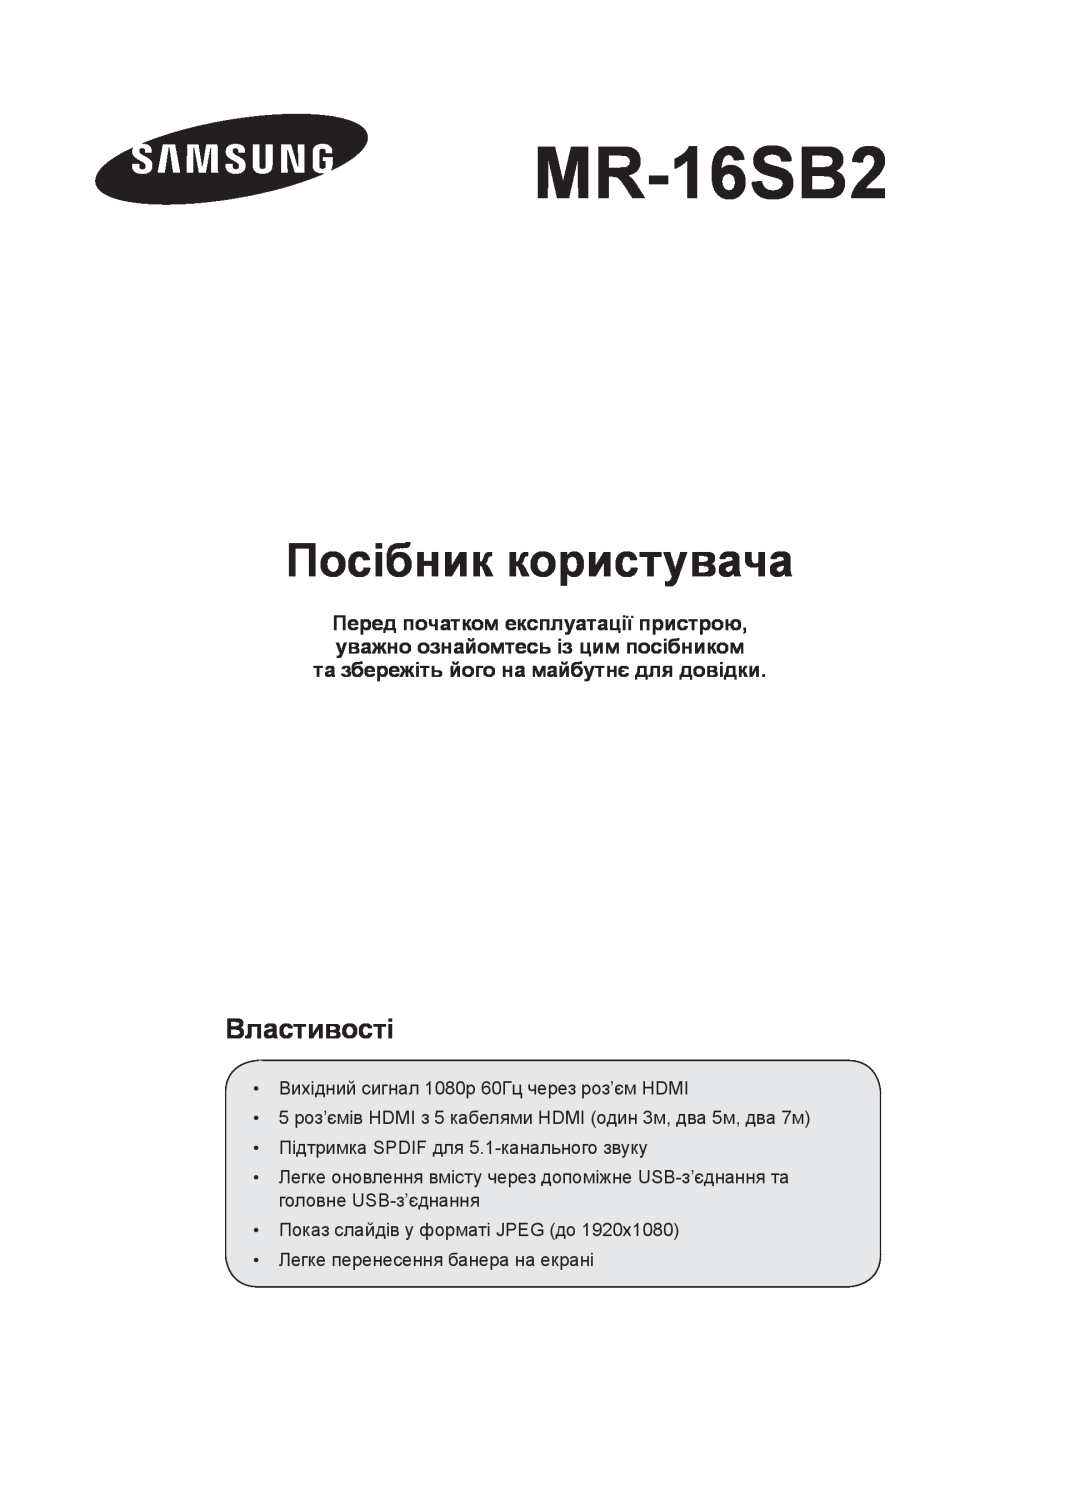 Samsung MR-16SB2 manual Посібник користувача, Властивості 